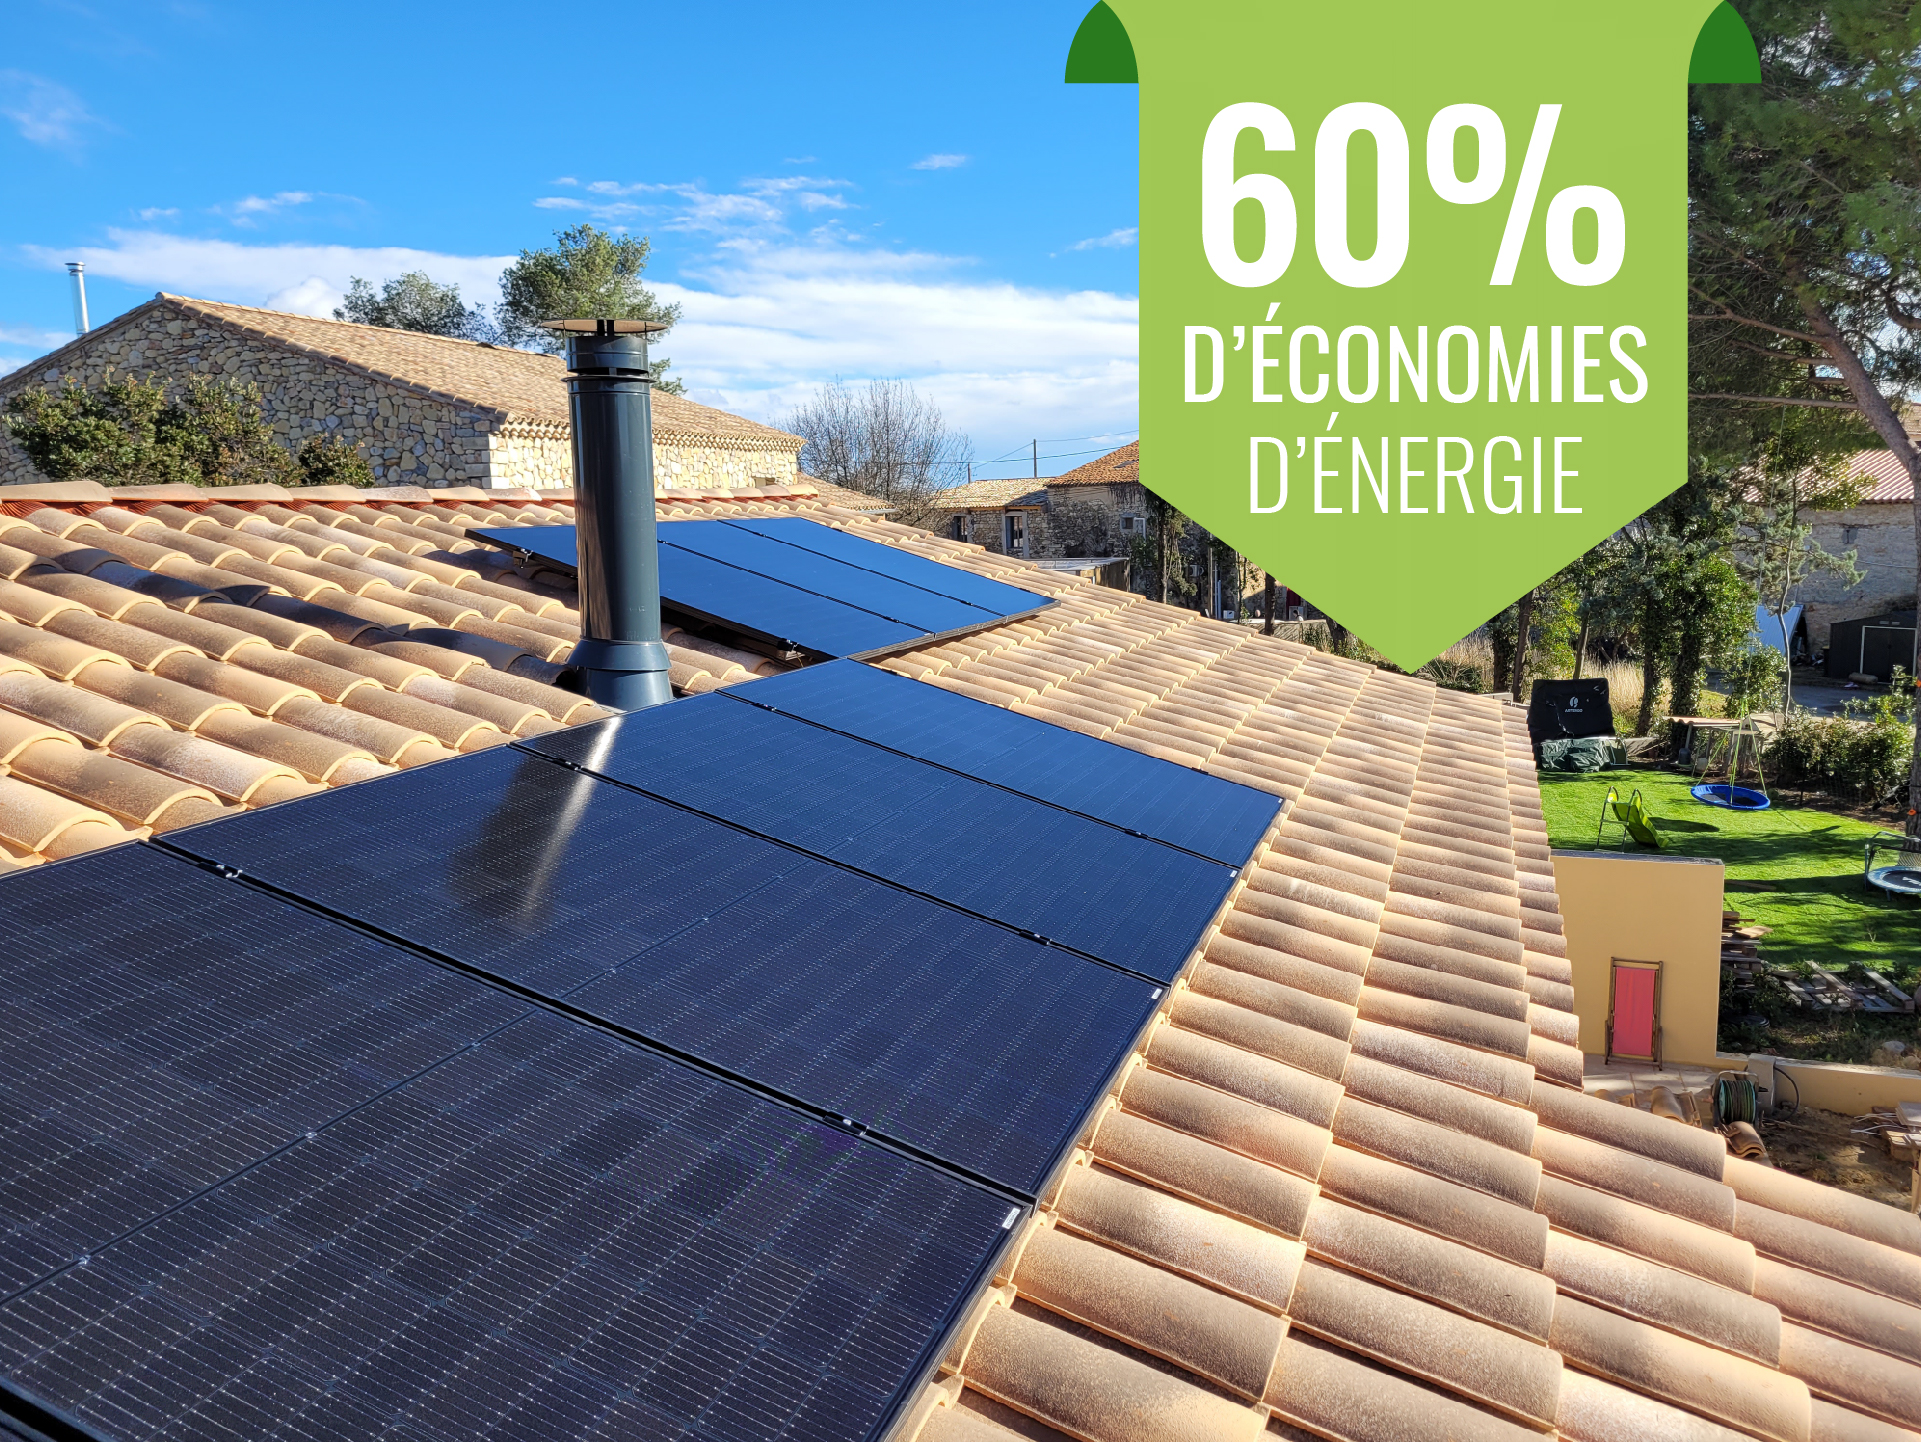 Panneaux solaires posés sur un toit de tuiles ocres avec la mention 60% d'économies d'énergie